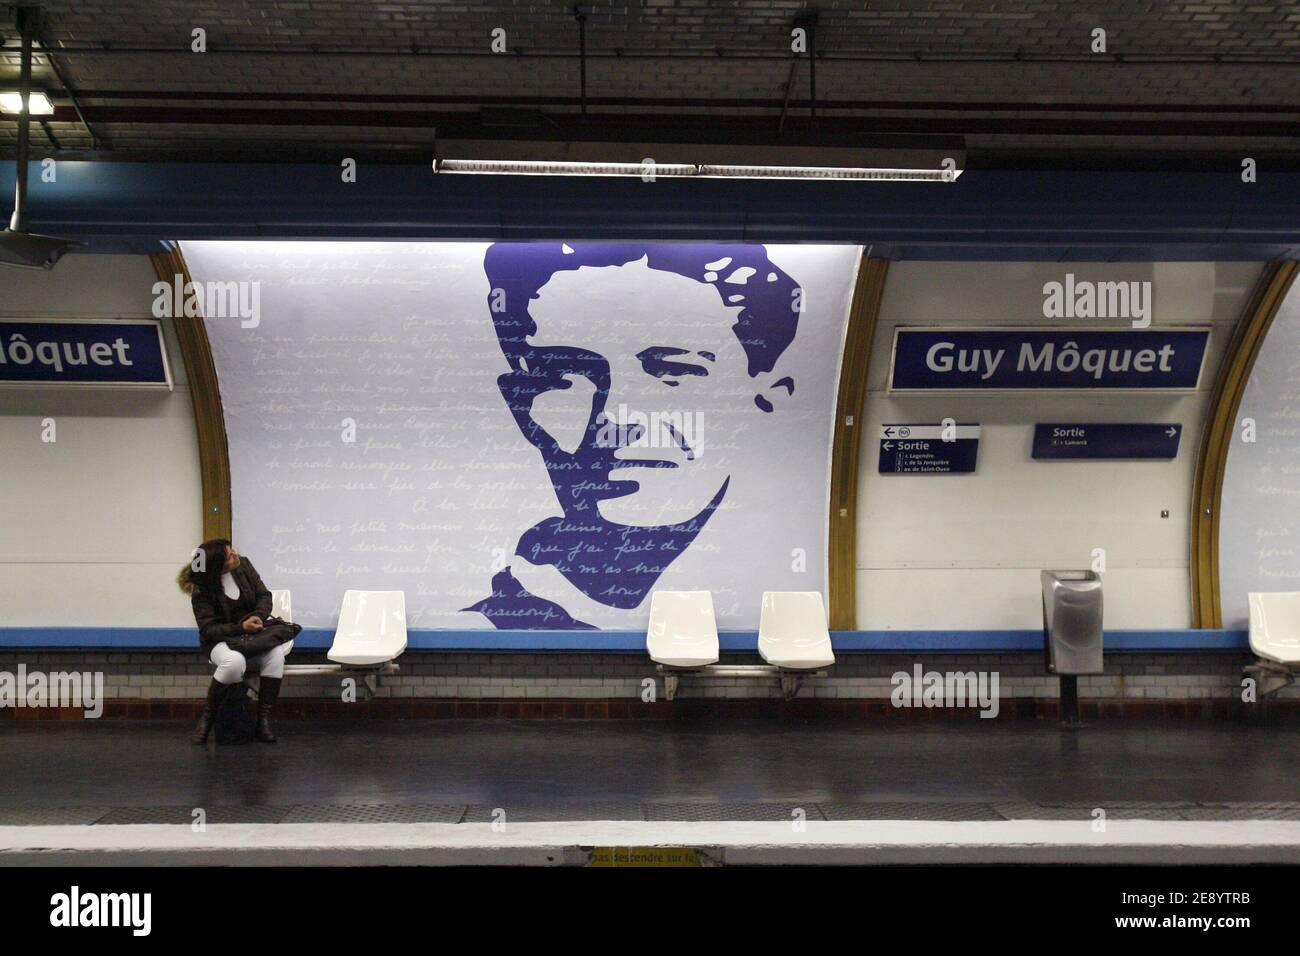 Hommage à Guy Moquet à la gare Guy Moquet de Paris, France, le 22 octobre  2007. Jeune communiste résistant, Guy Moquet n'avait que 17 ans lorsqu'il a  été exécuté par un peloton